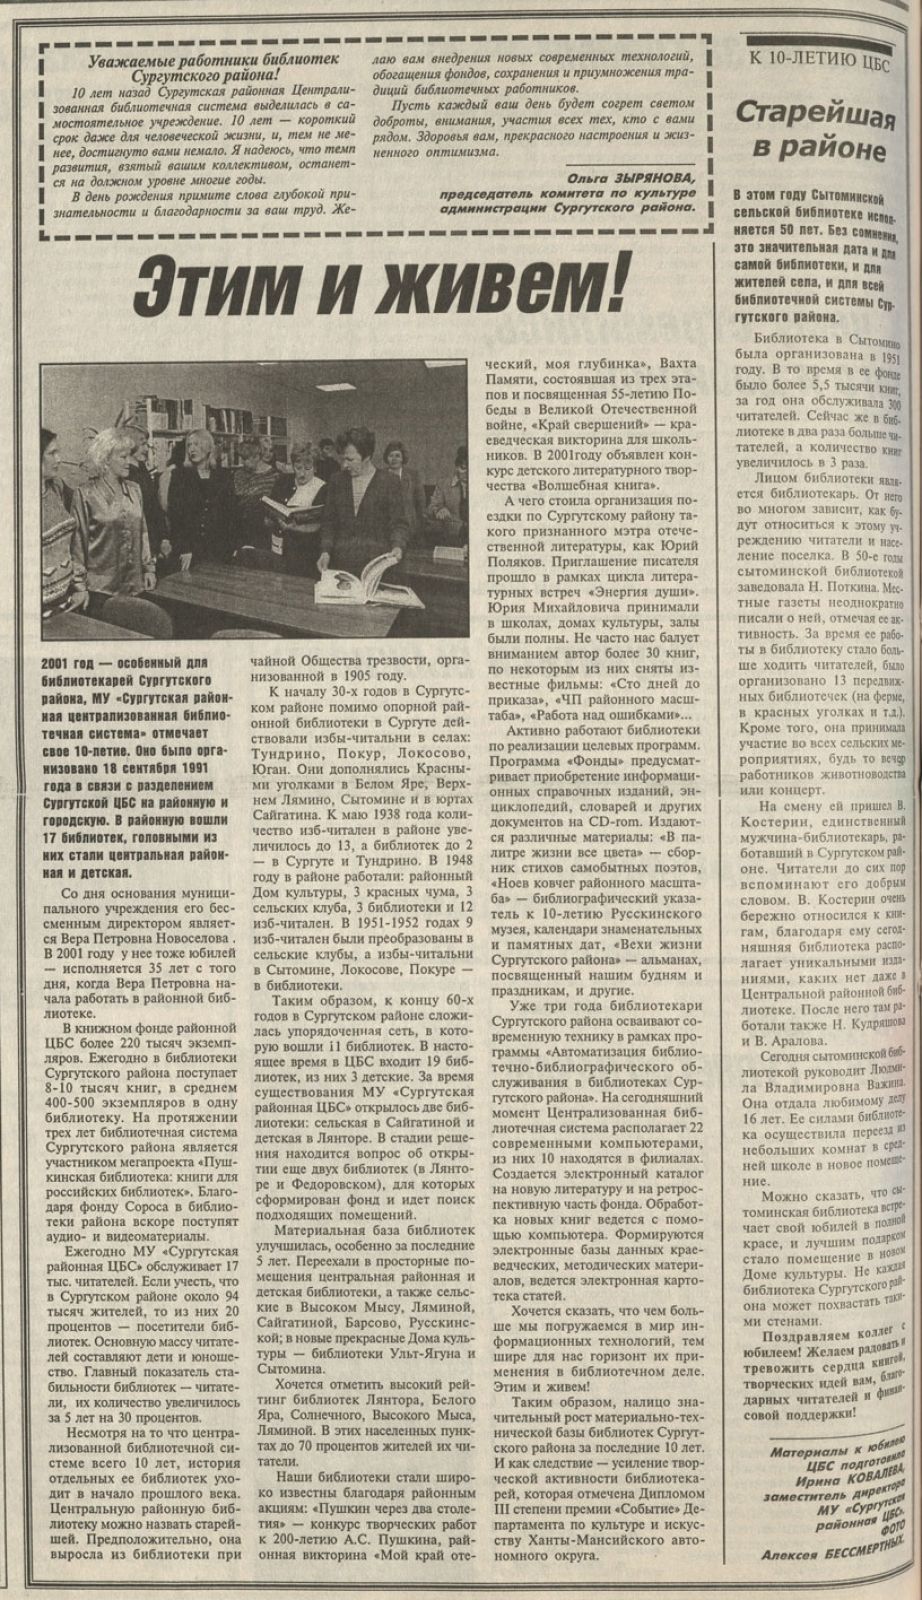 Сургутская районная газета «Вестник». 2001 год